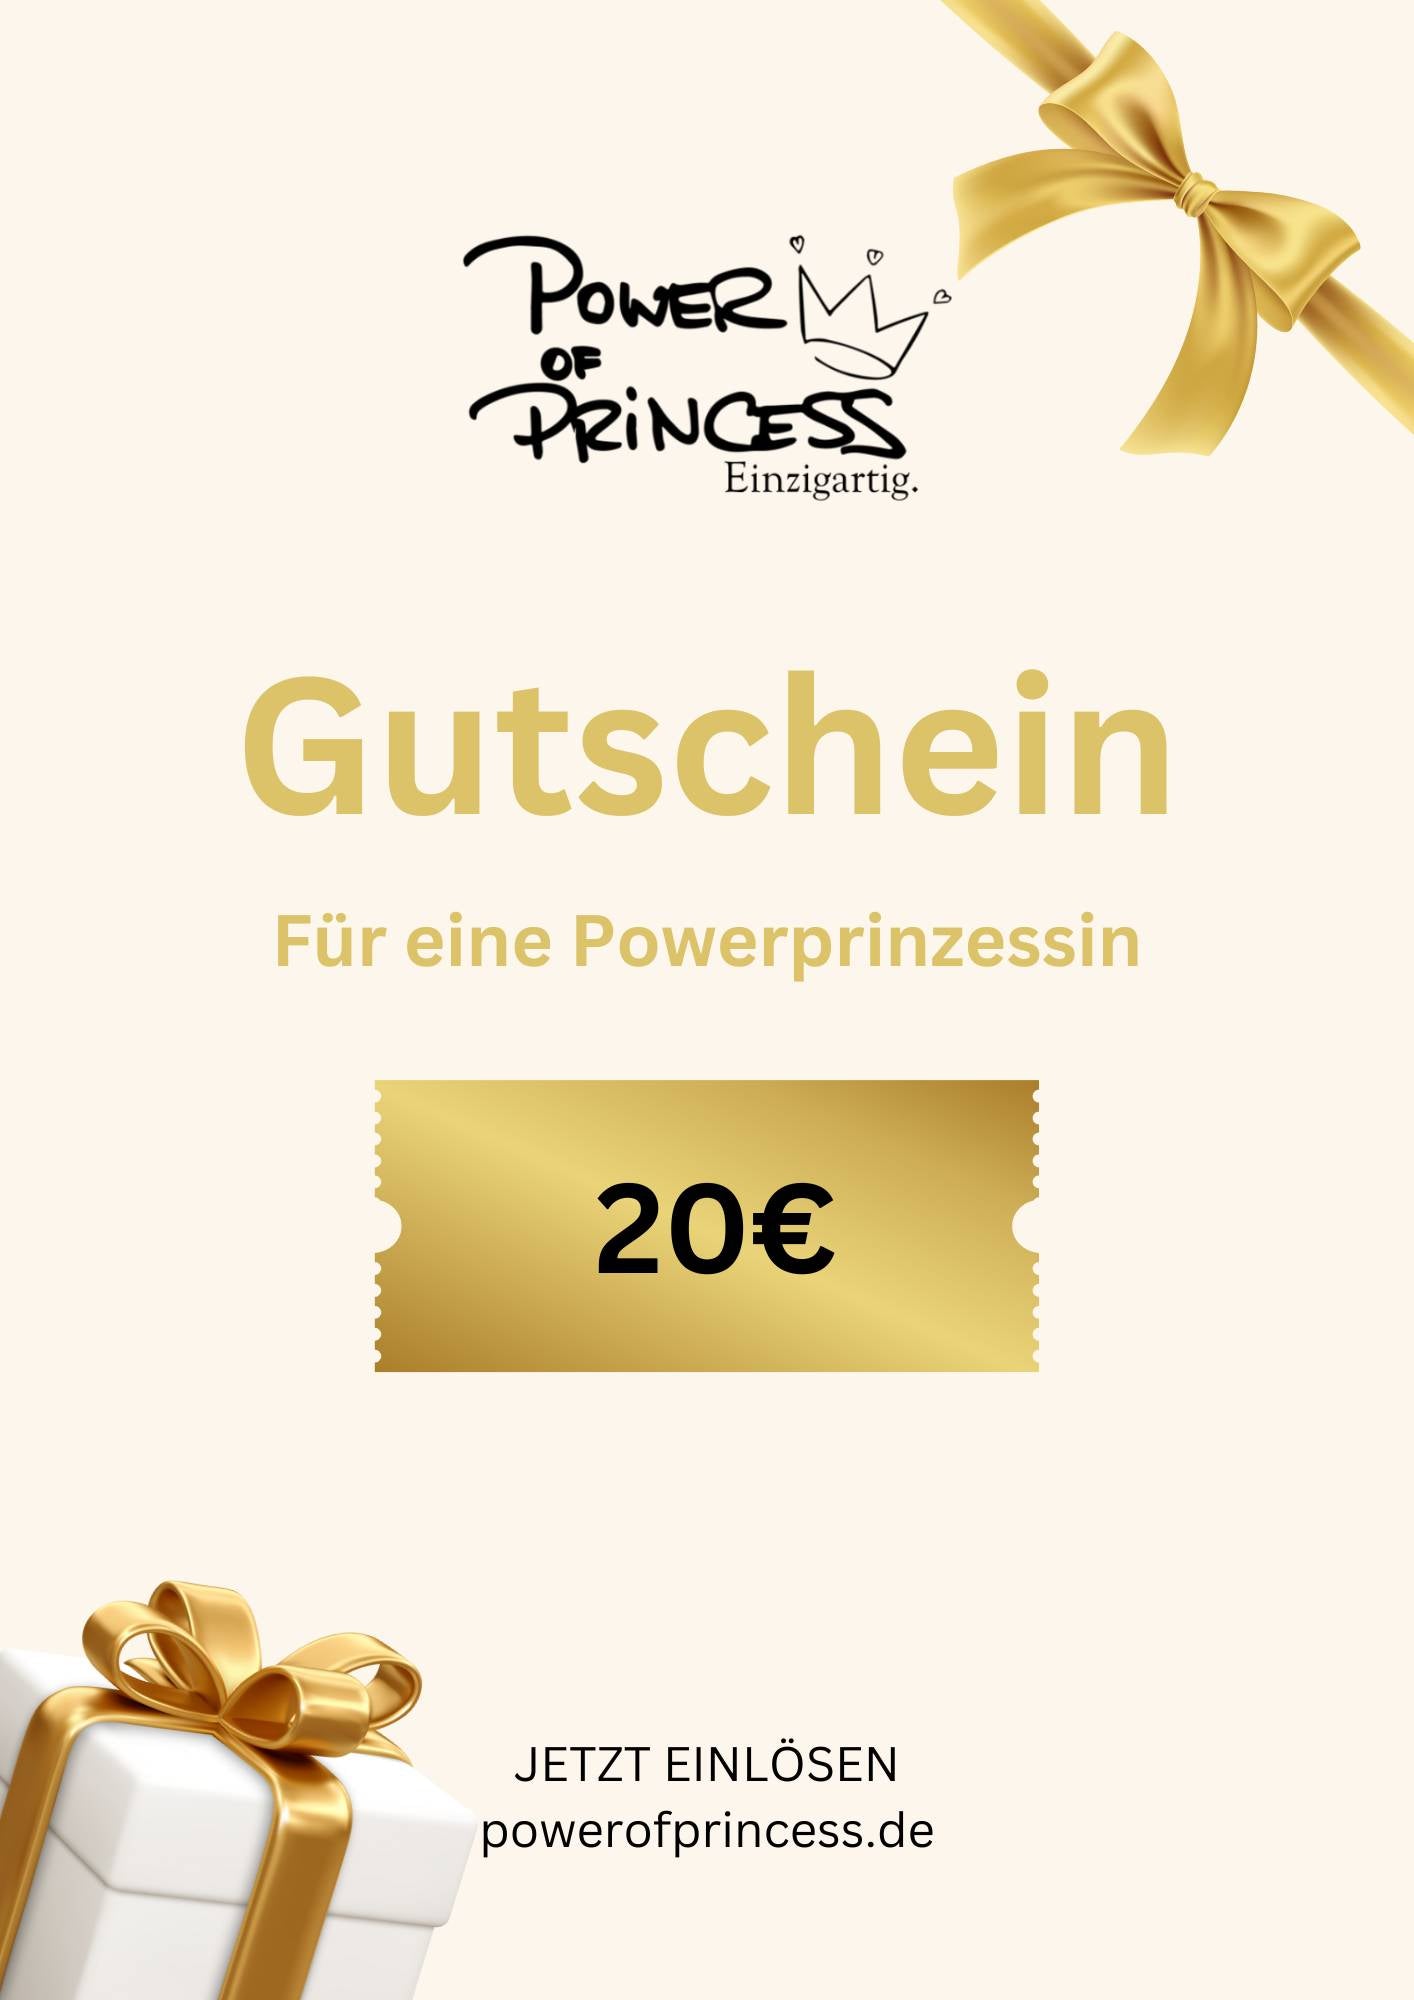 Gift voucher Power of Princess 20 - 500 €